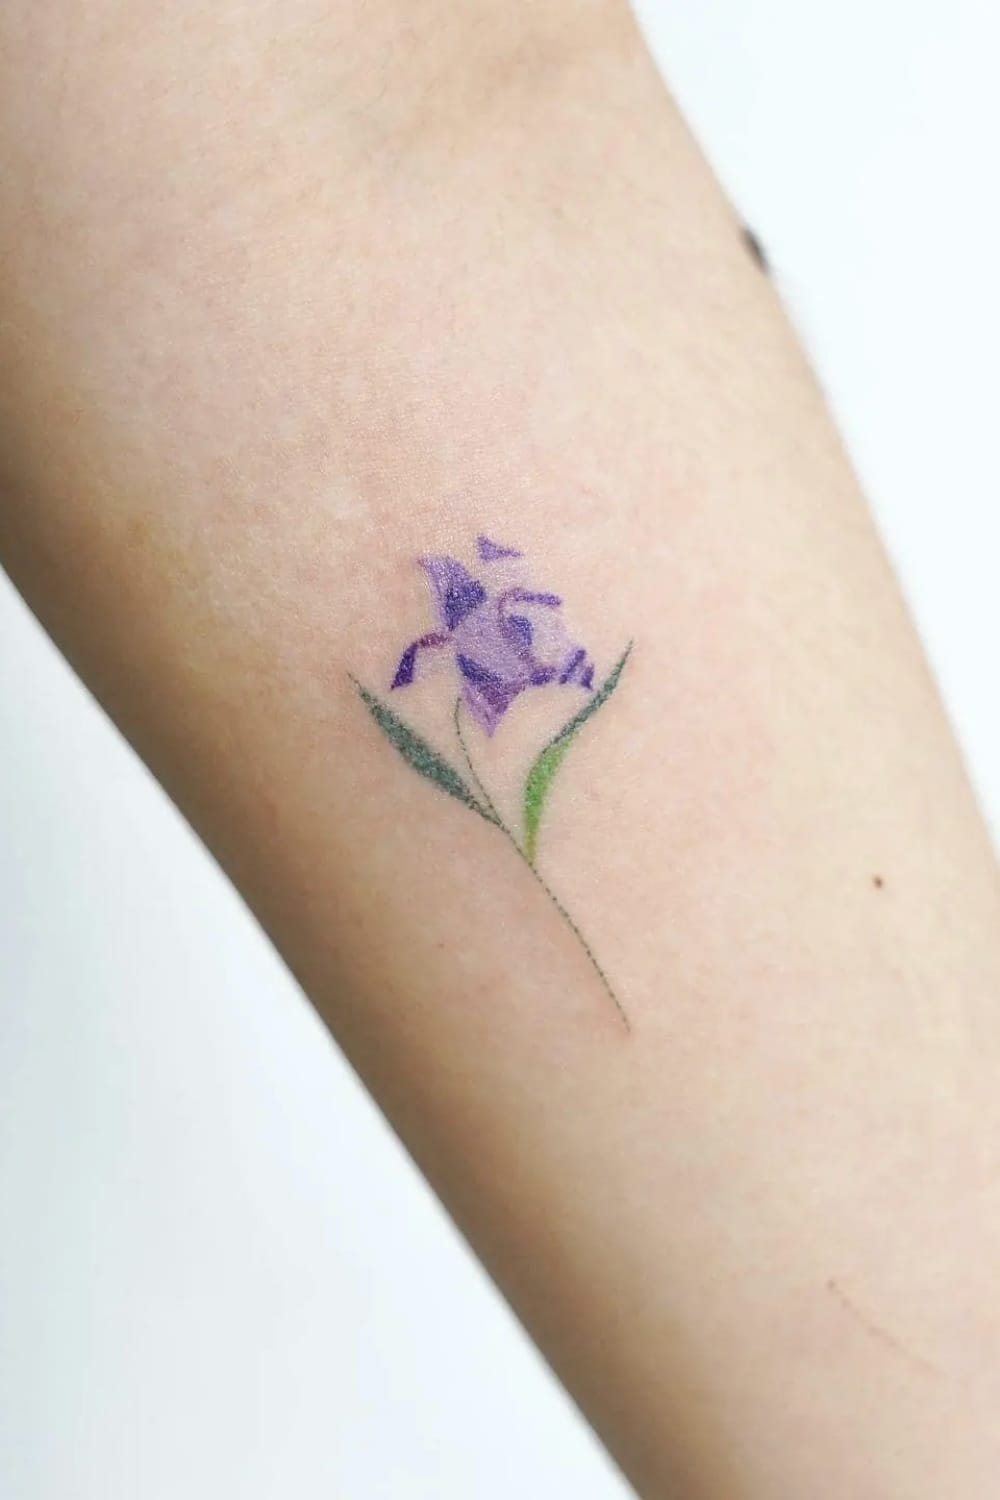 Small Violet tattoo